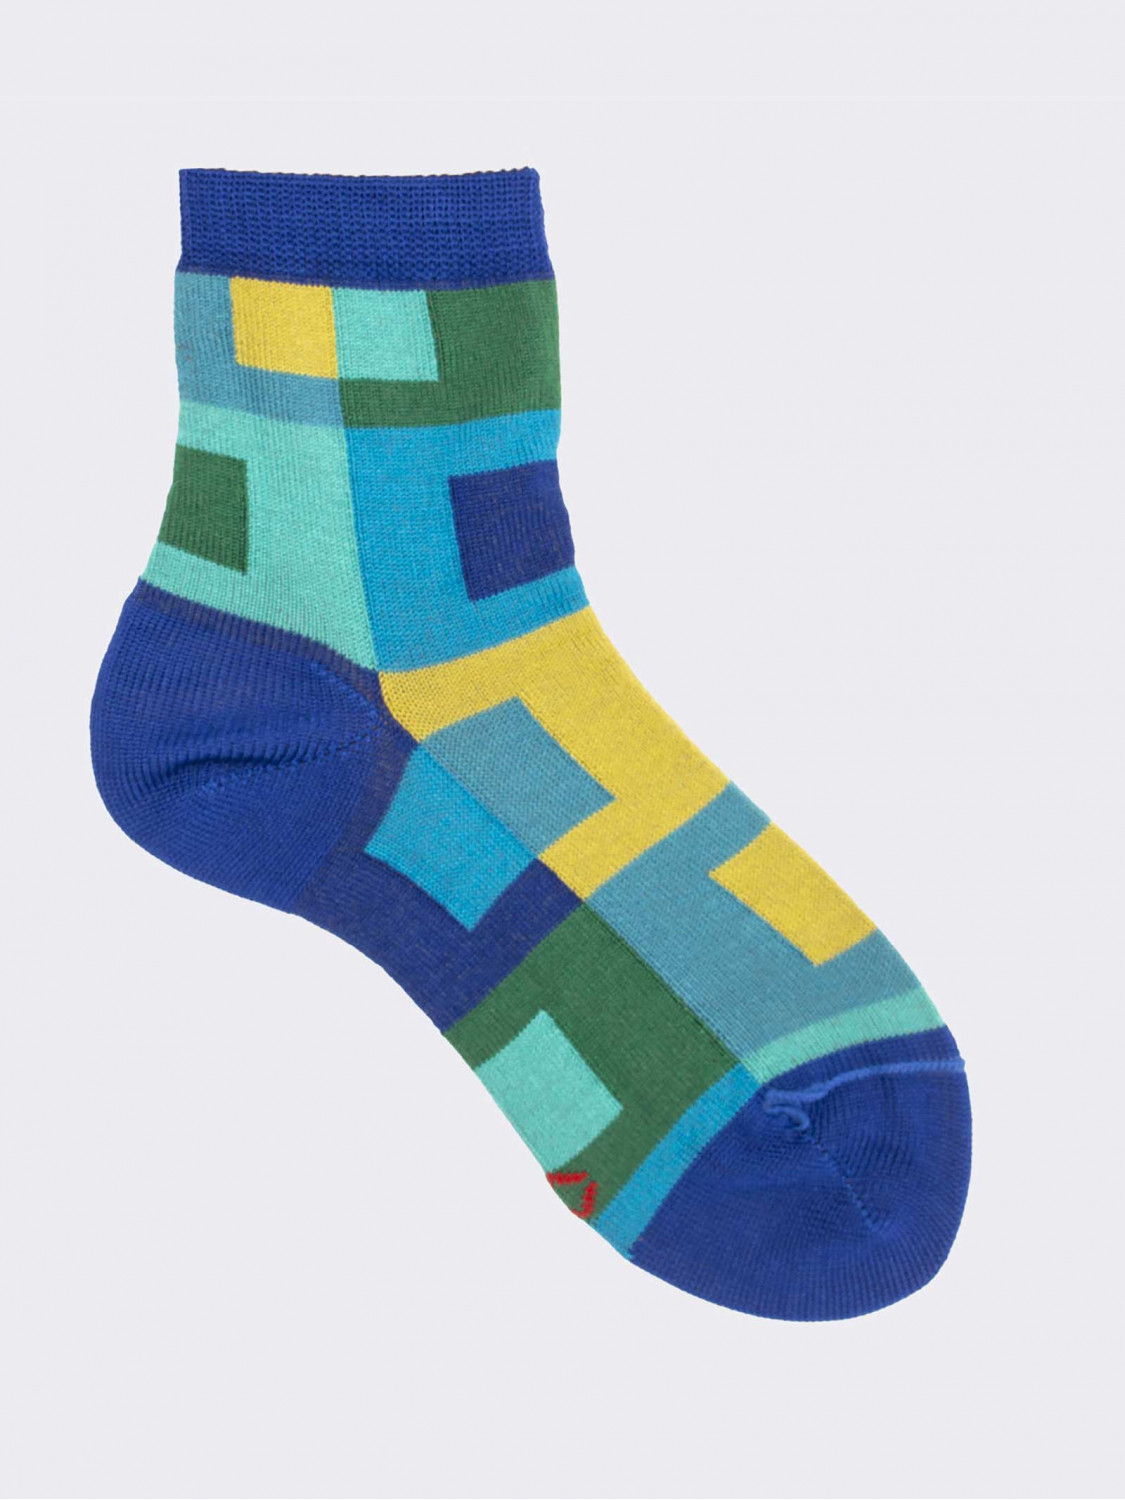 Geometrisch gemusterte kurze Socken für Jungen aus frischer Baumwolle